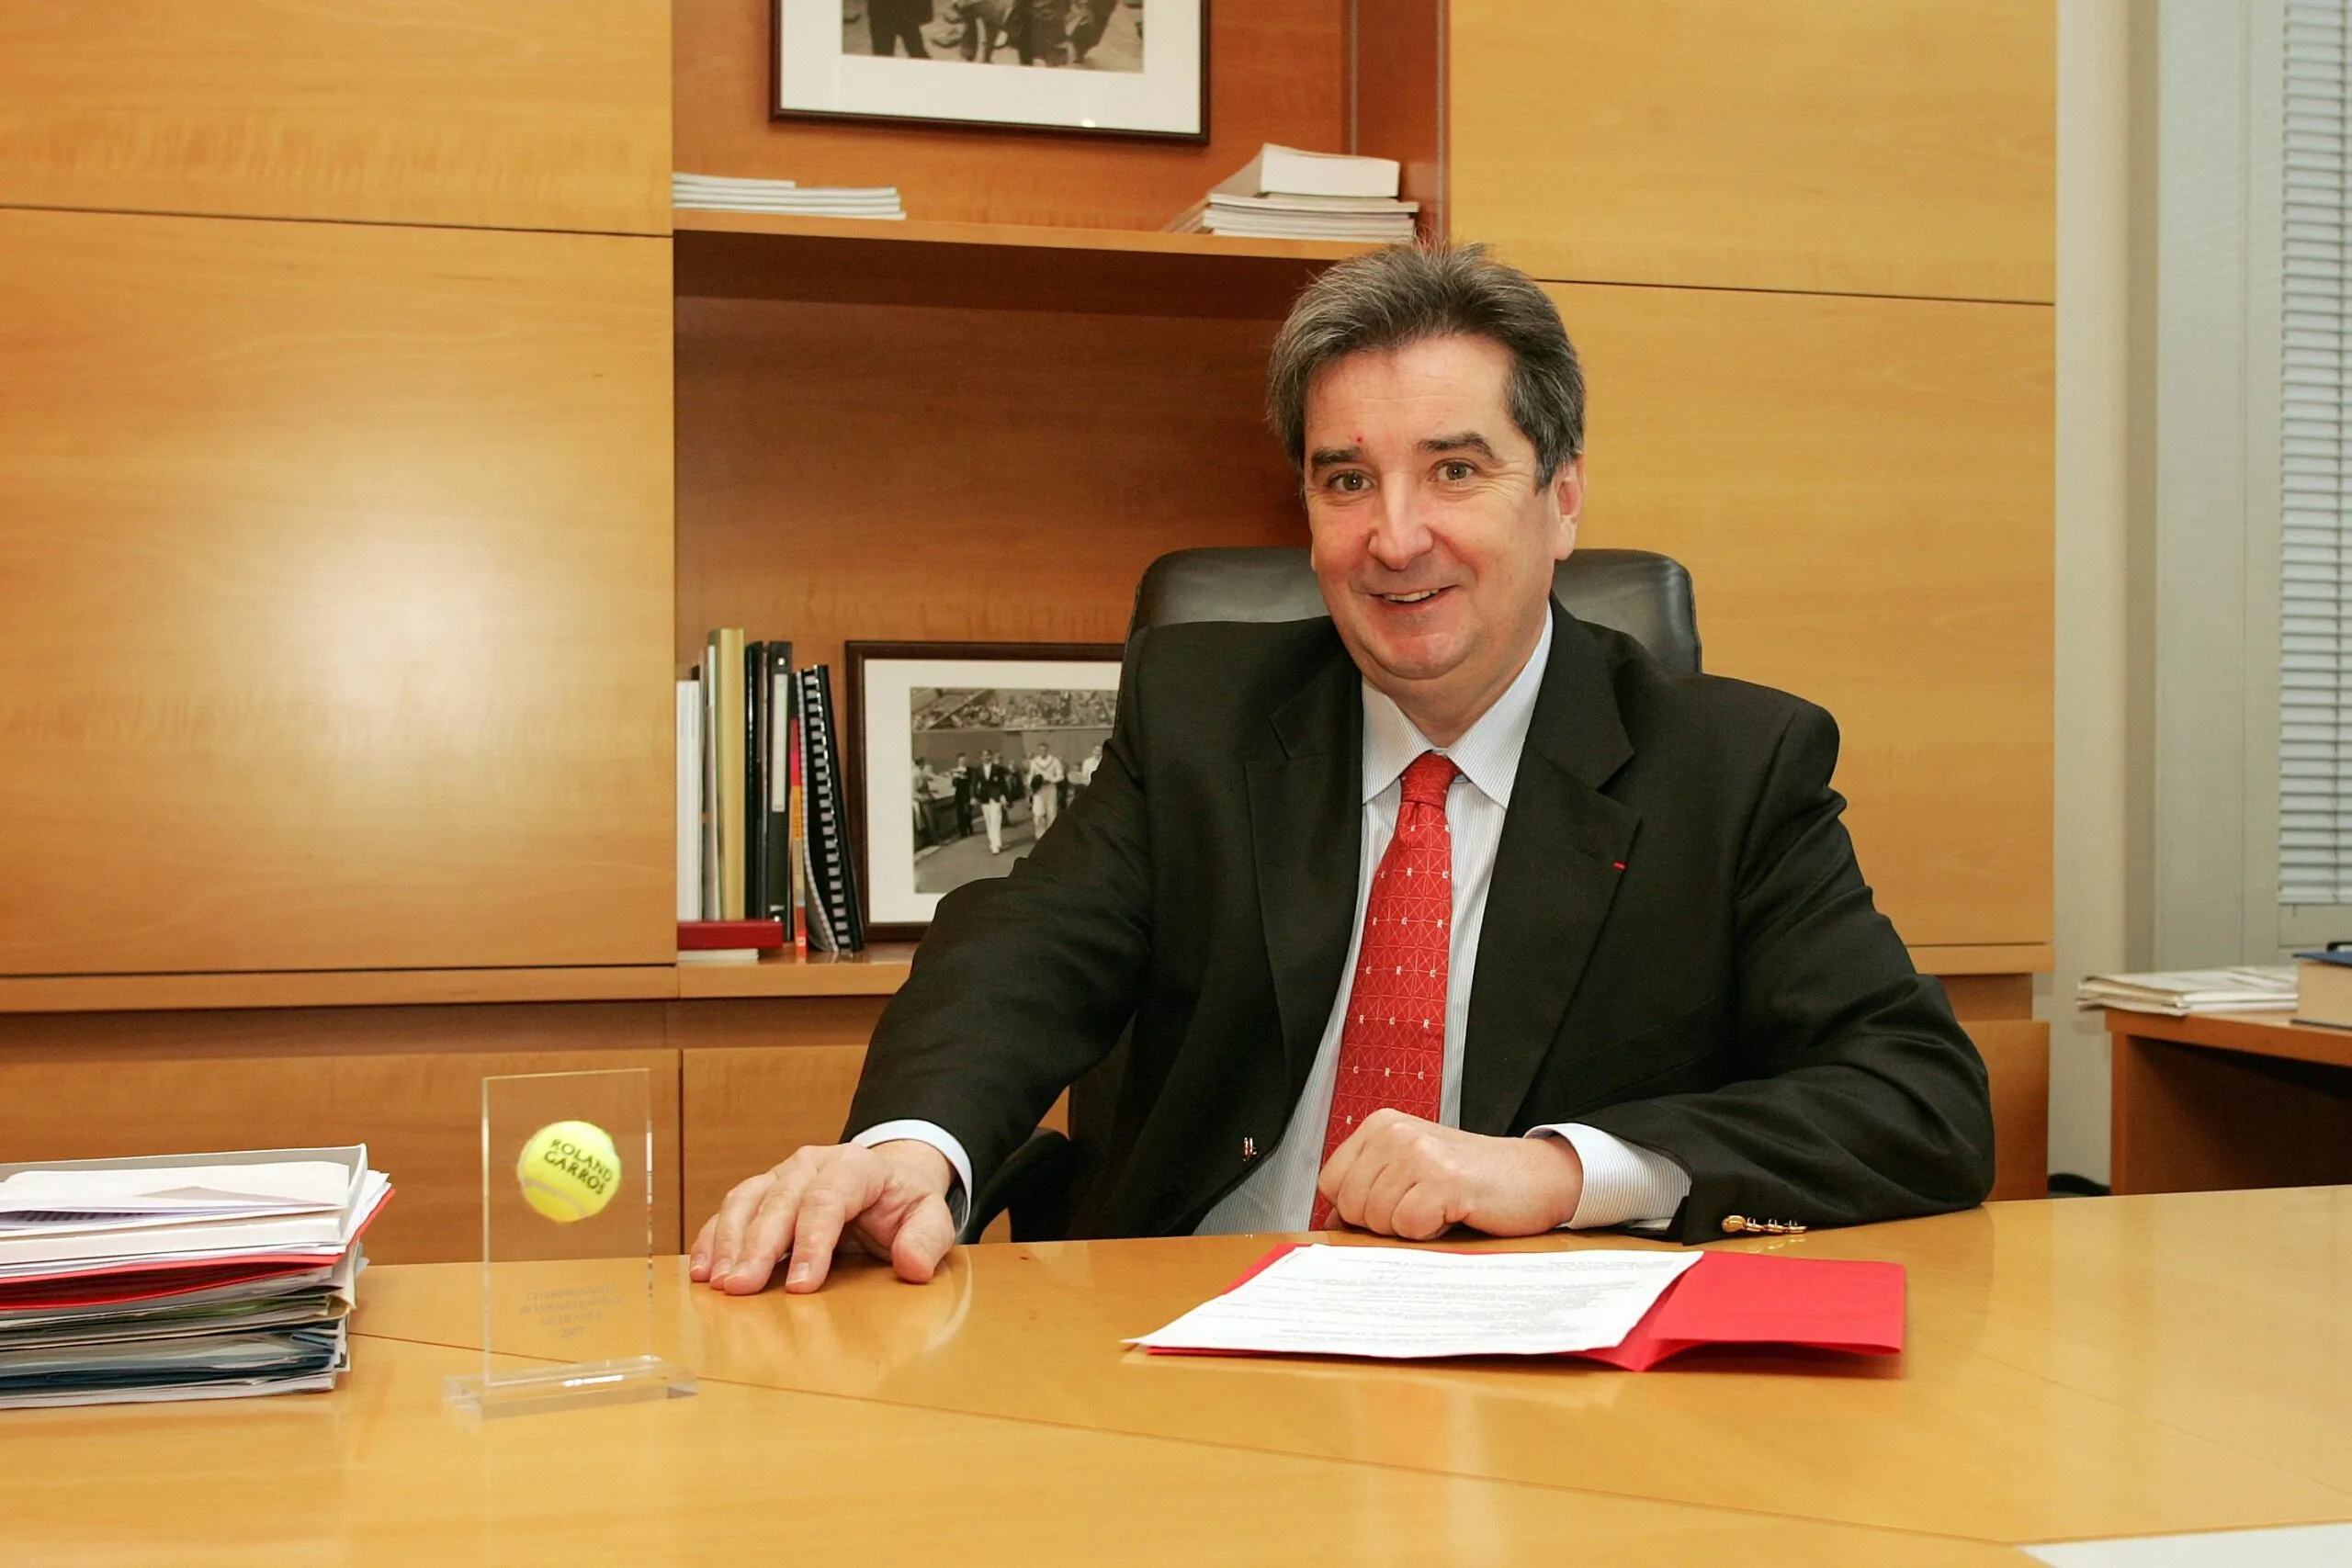 Jean Francois VILOTTE -15.02.2008 - Directeur general du tournoi de Roland Garros et de la Federation Francaise de Tennis